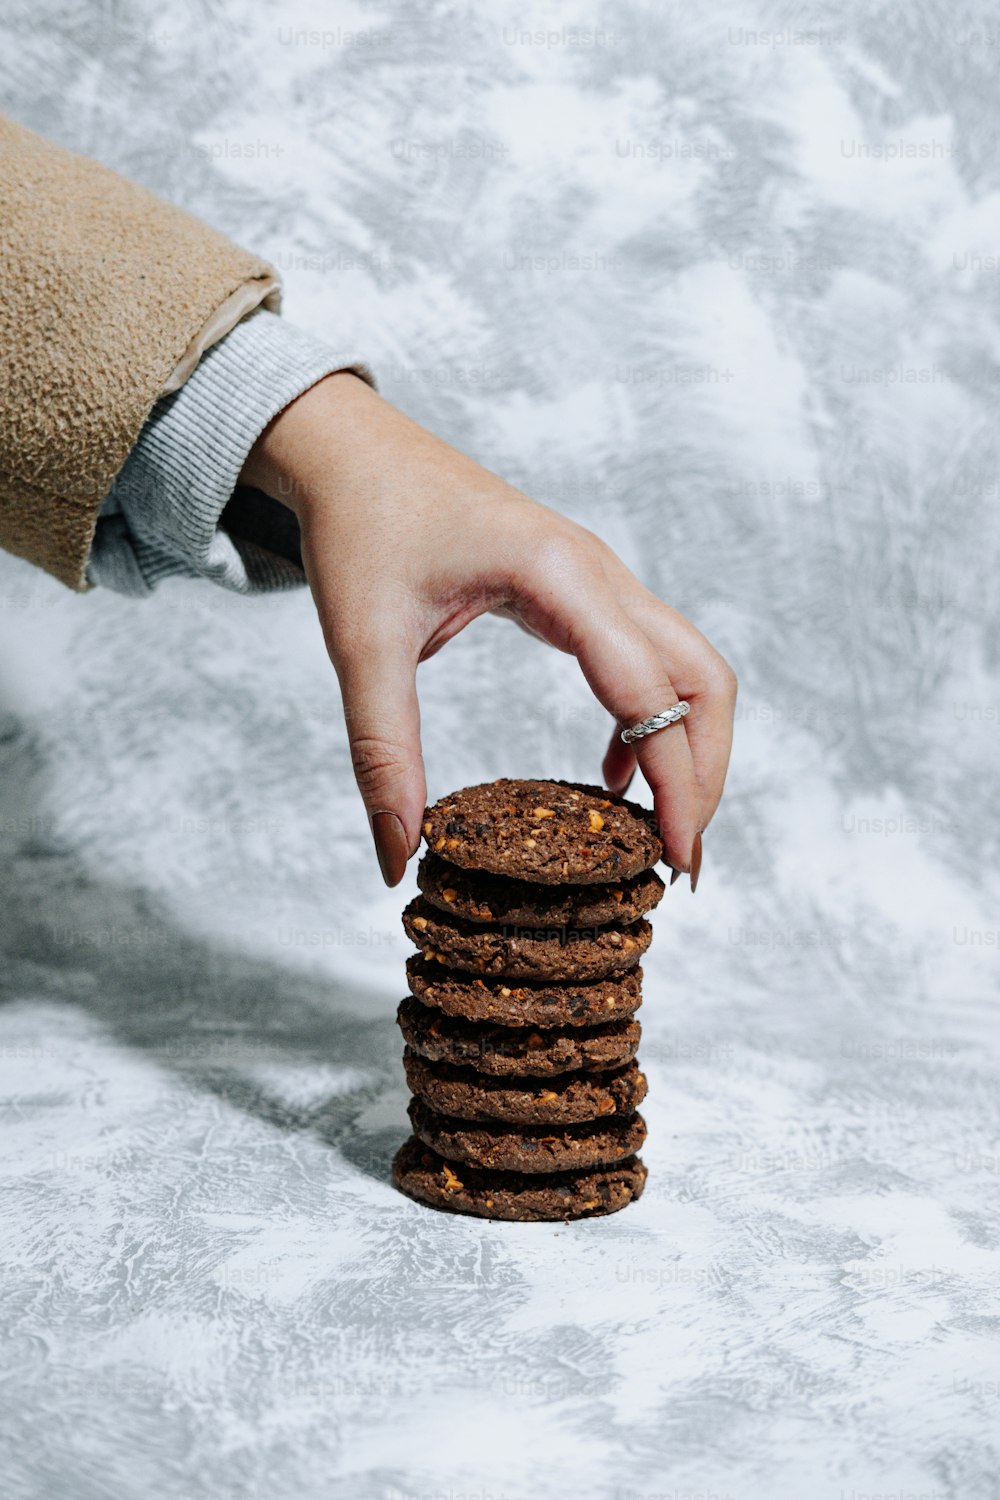 una mano che raggiunge una pila di biscotti